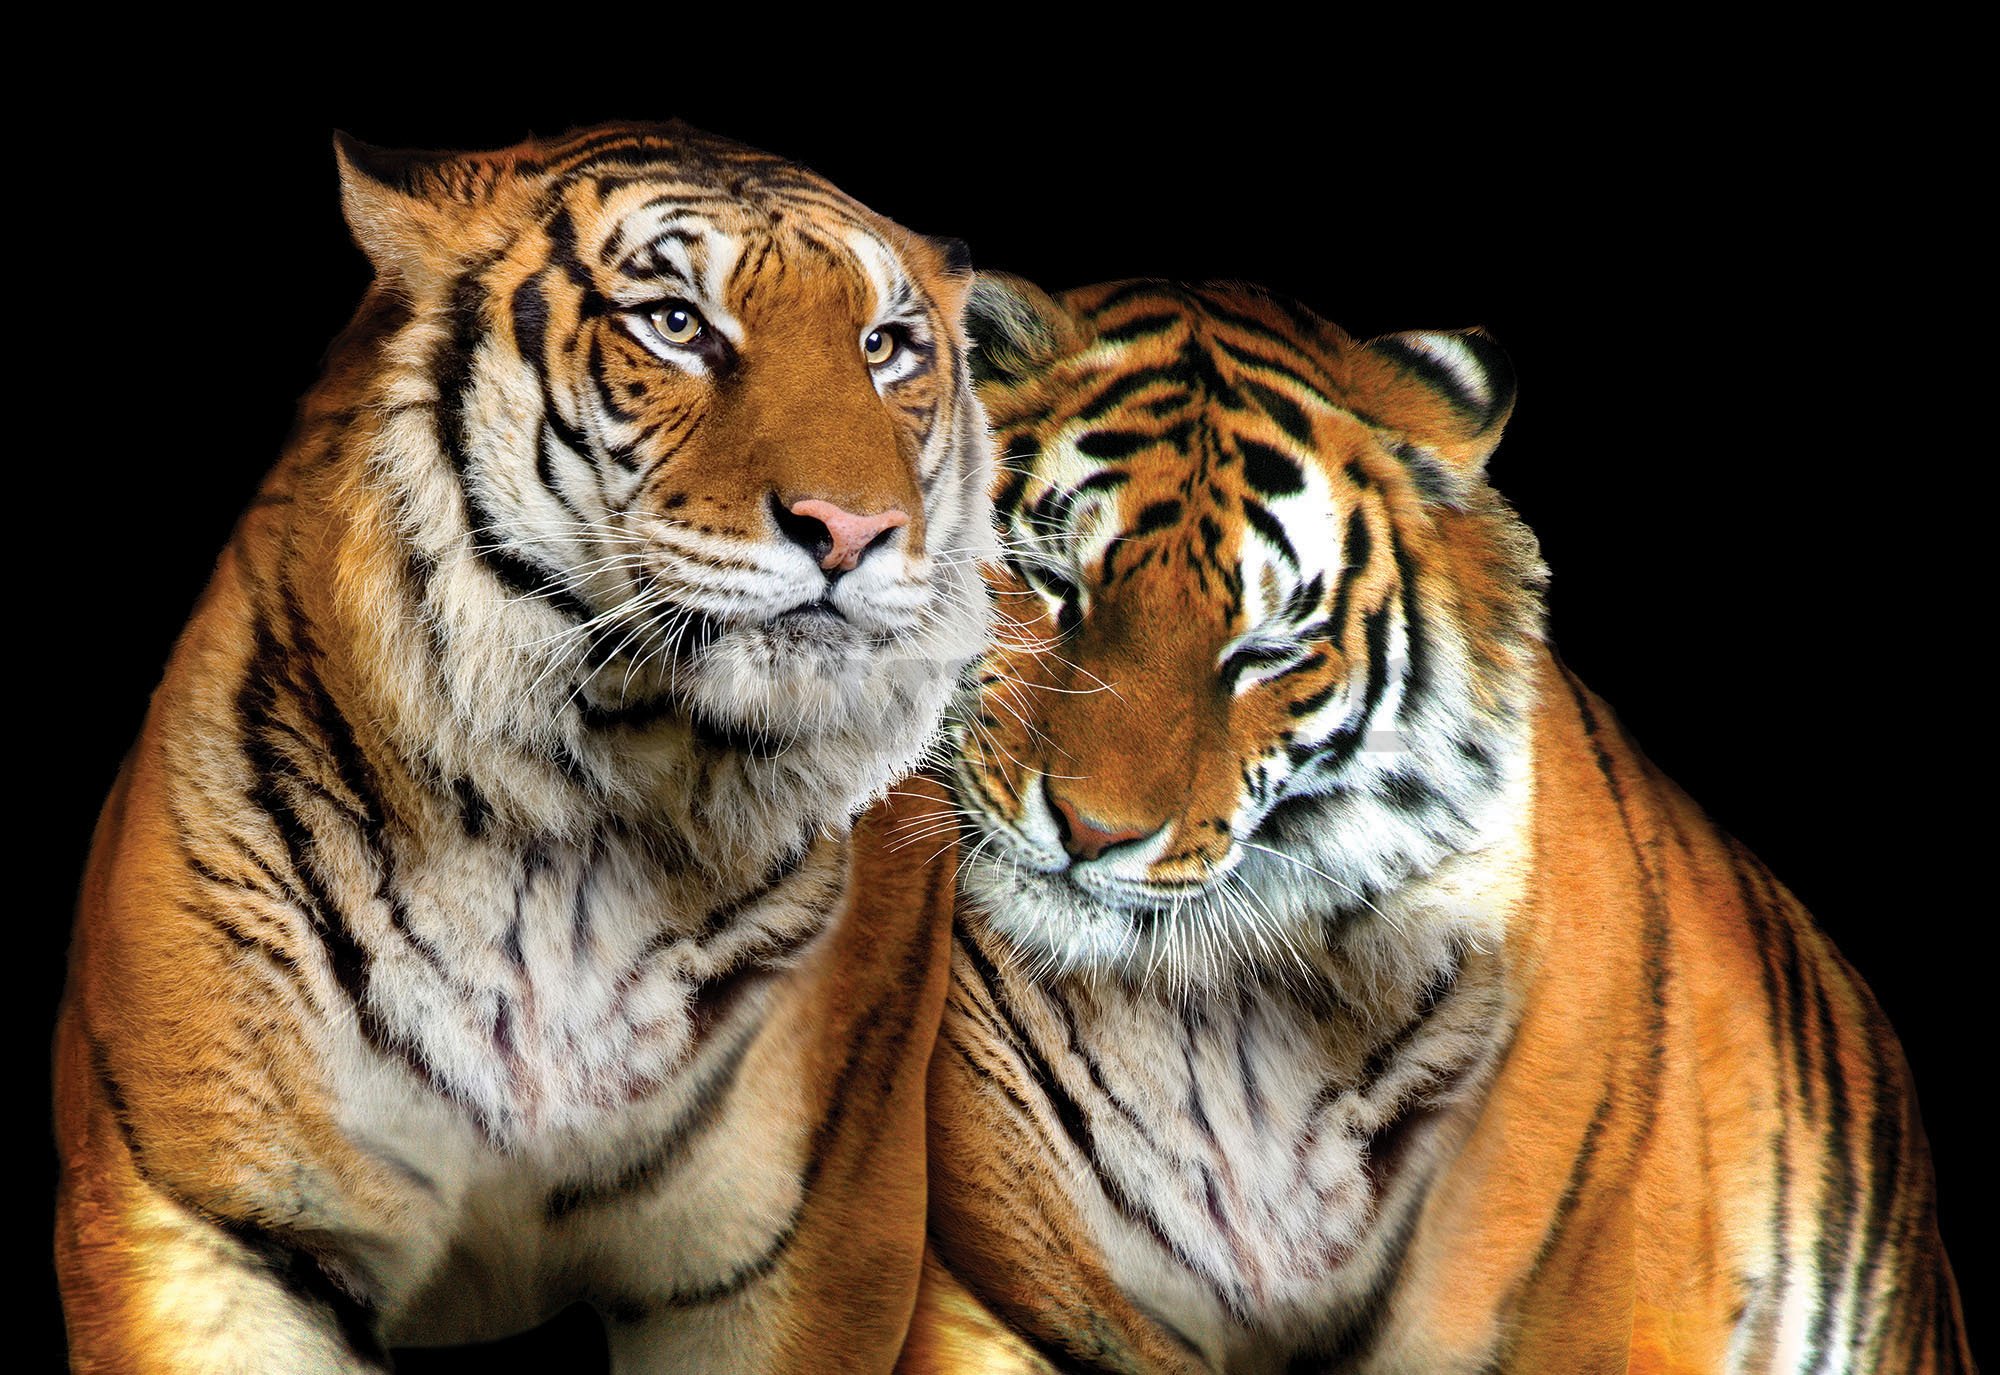 Foto tapeta: Dva tigra - 254x368 cm